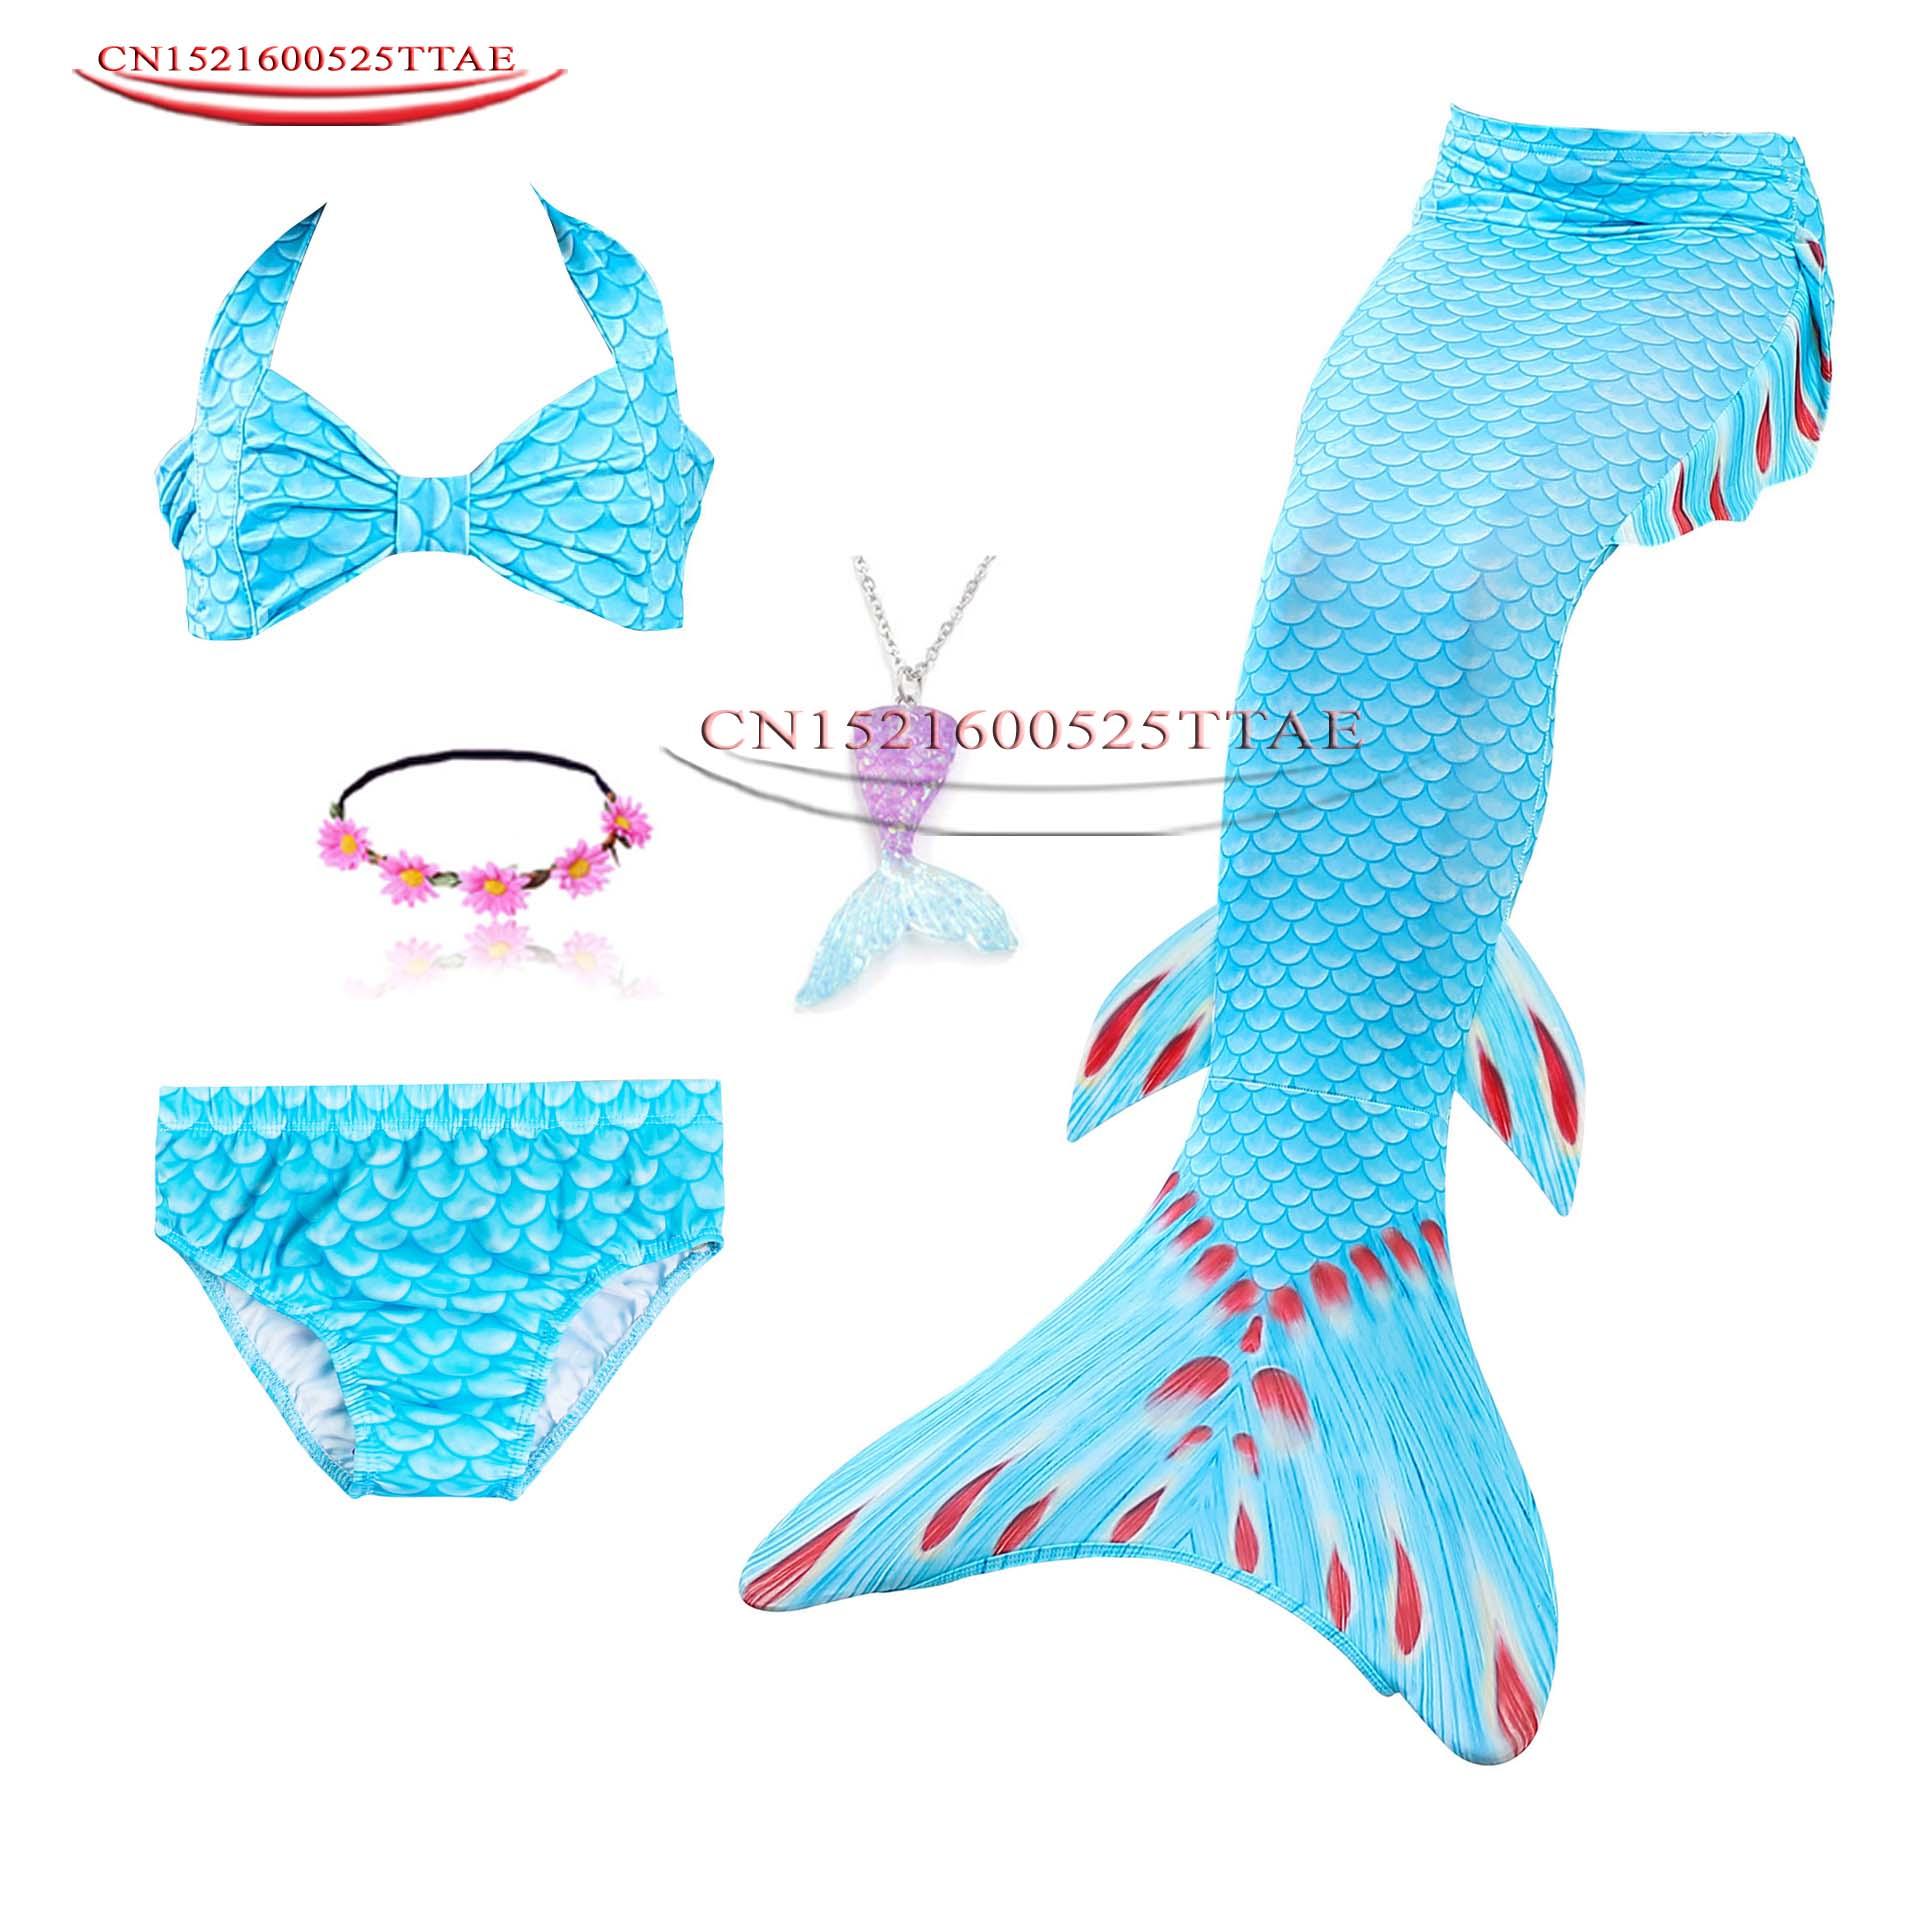 Изображение товара: Детский купальный костюм русалки для девочек 2020, купальный костюм бикини, купальный костюм с хвостом русалки, парики для косплея